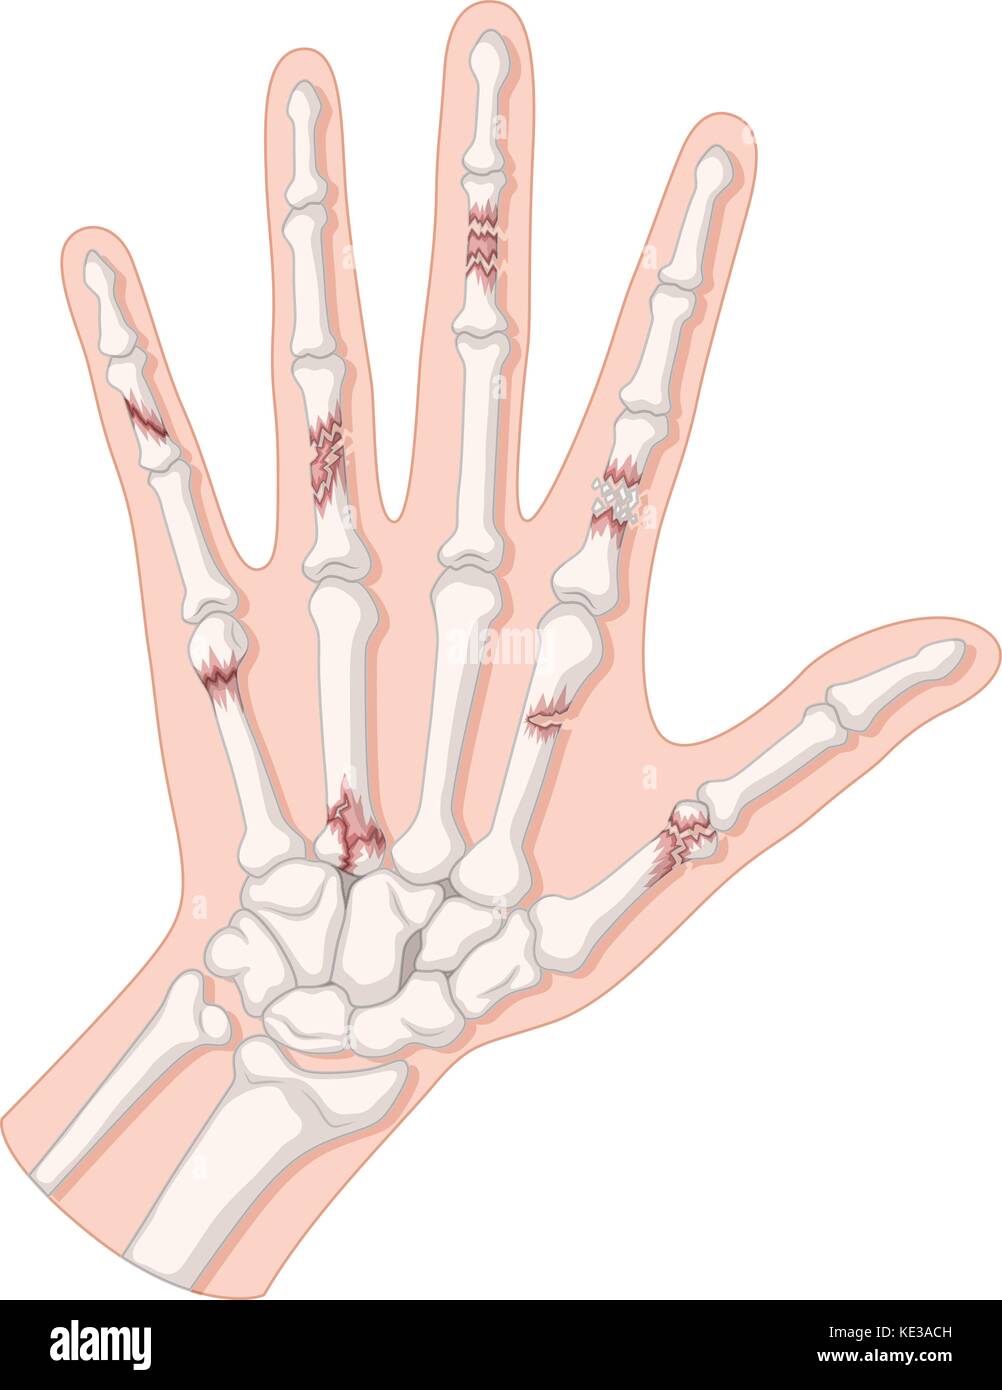 Gebrochene Knochen in der menschlichen Hand Abbildung Stock Vektor